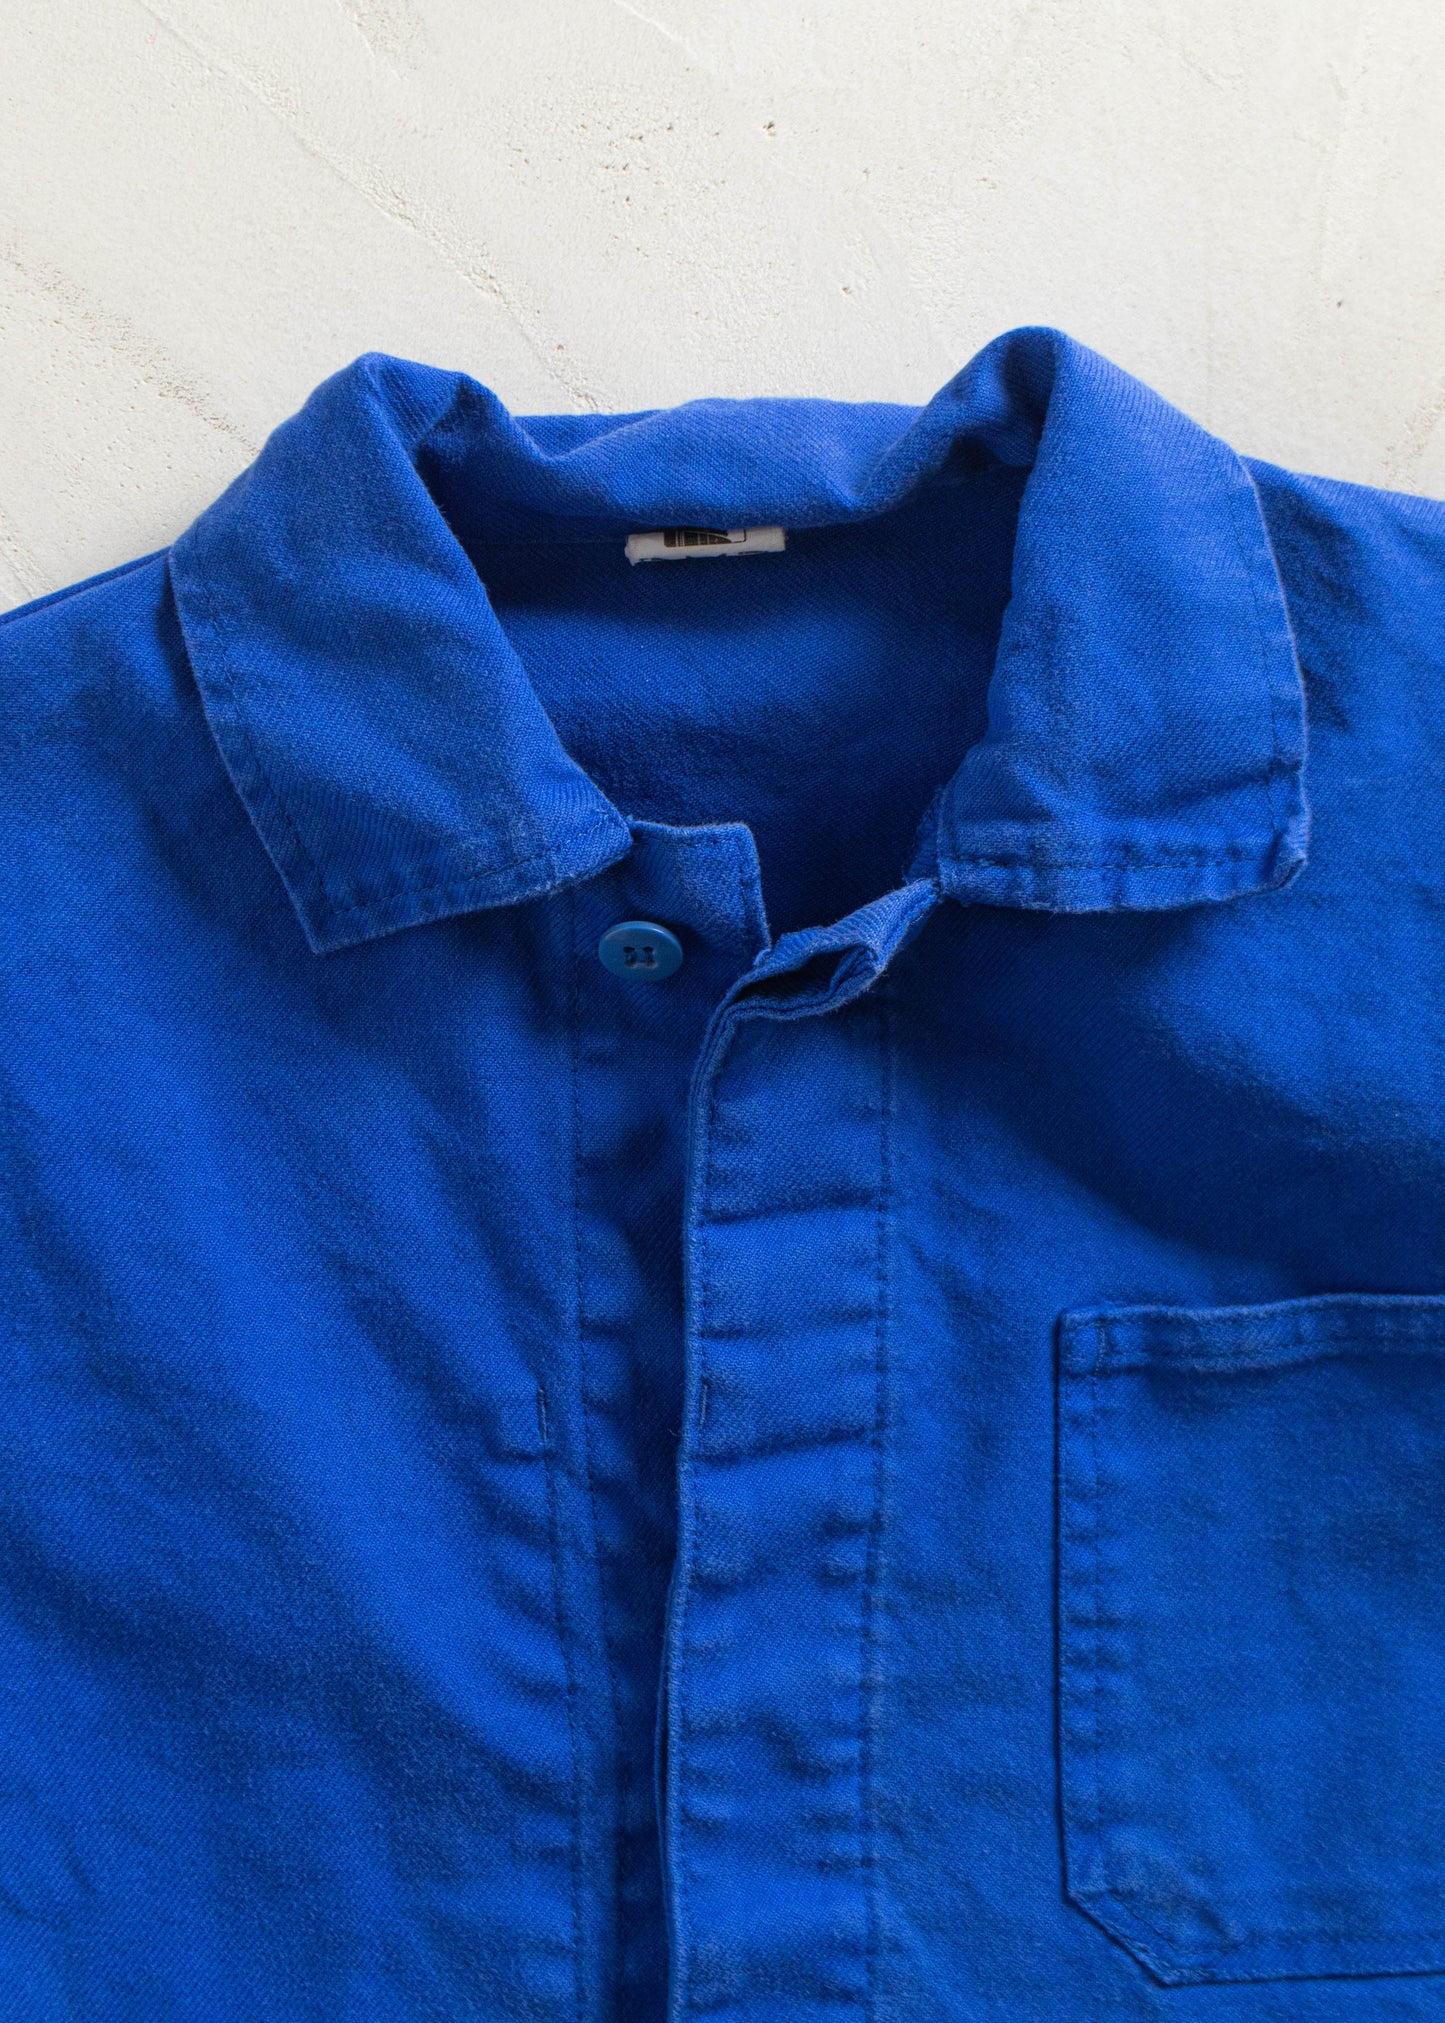 Vintage 1980s DMD Bleu de Travail Workwear Chore Jacket Size S/M